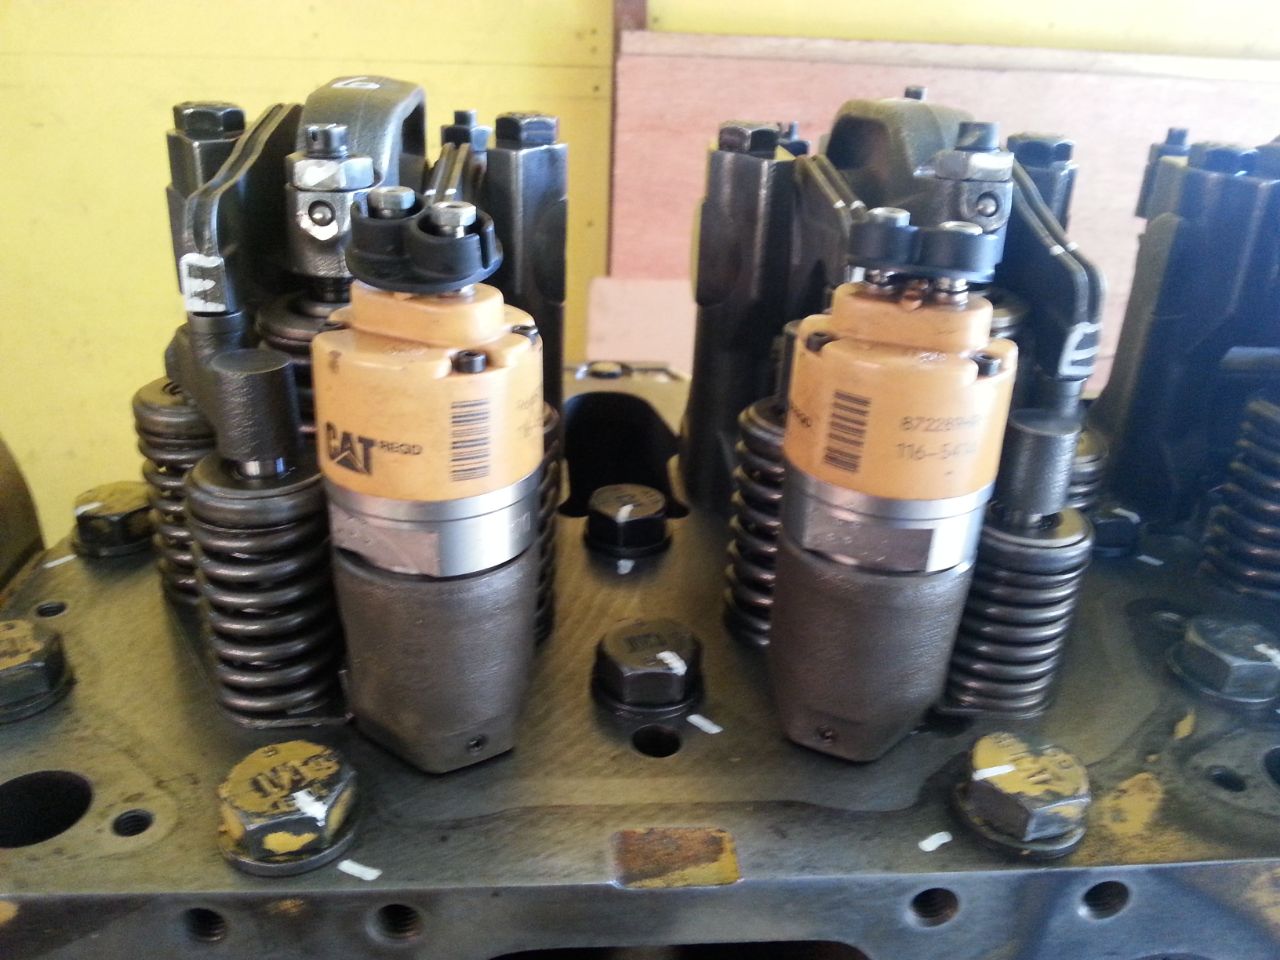 Cat 345 Rebuilt Engine